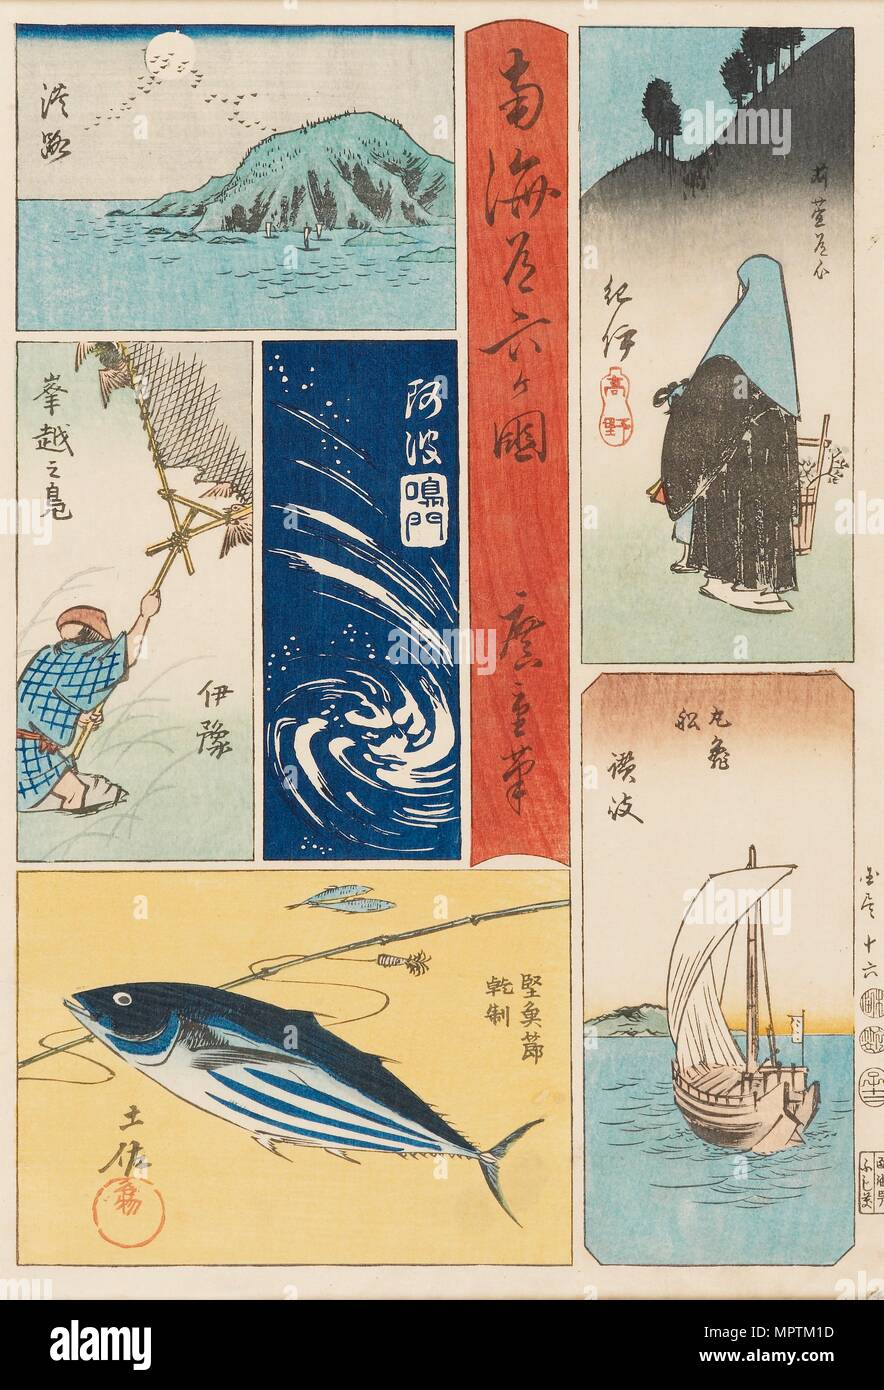 Ukiyo-e print - Nankaido Rokka-koku, 19th century. Artist: Ando Hiroshige. Stock Photo